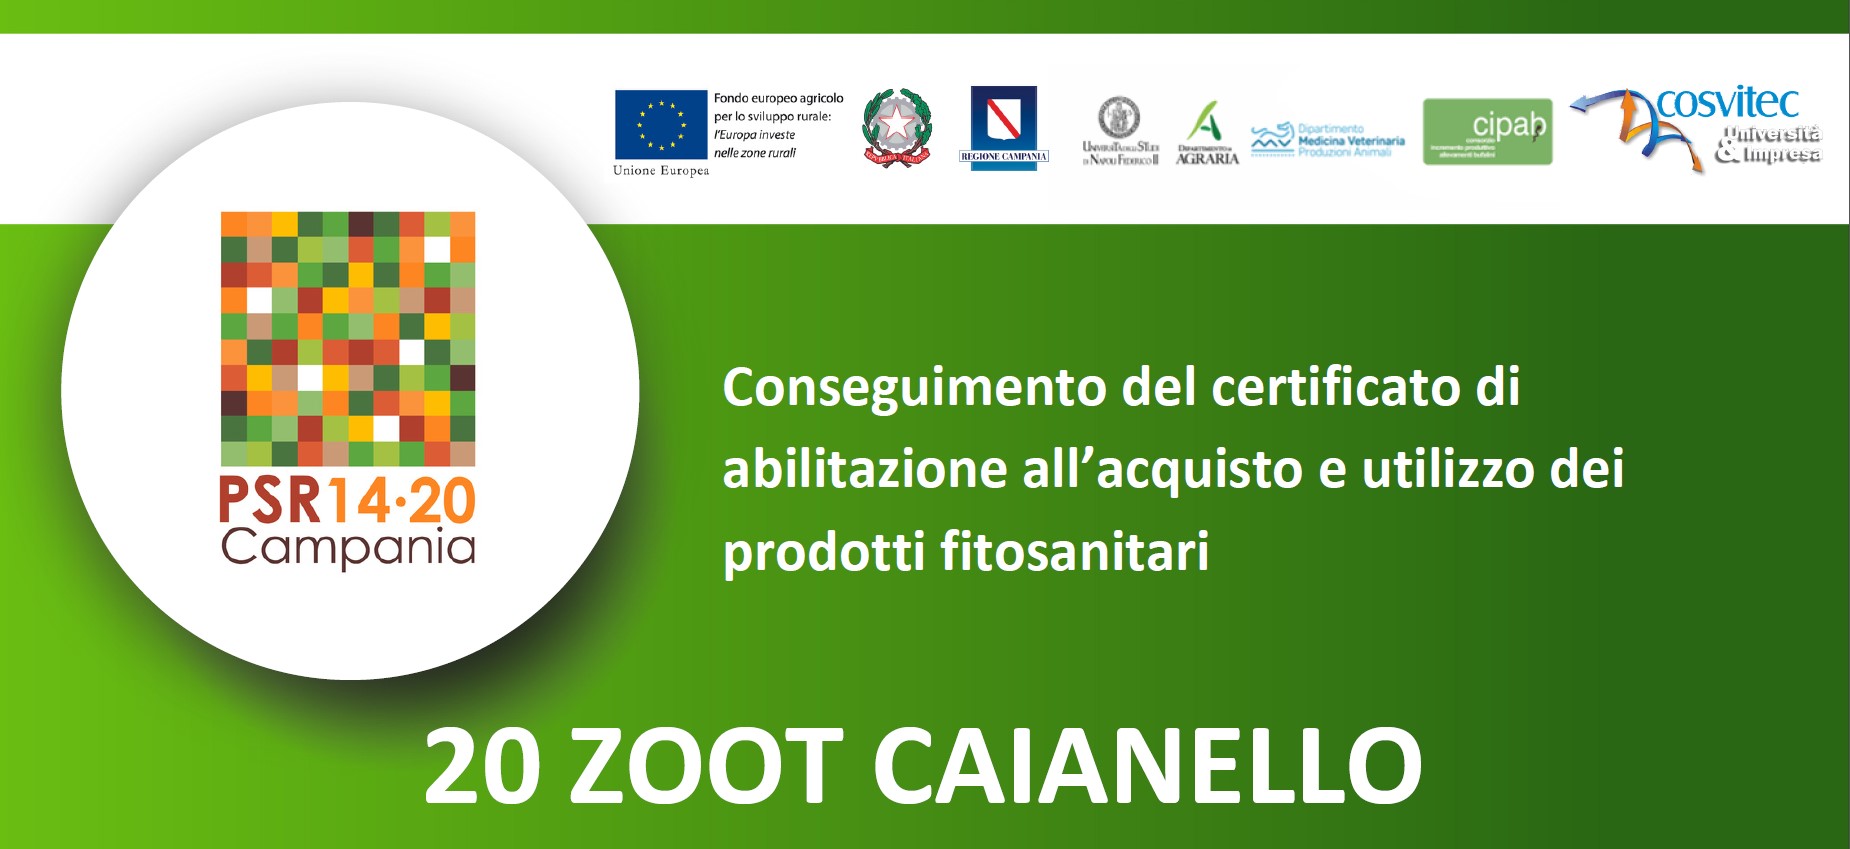 Conseguimento del certificato di abilitazione all’acquisto e utilizzo dei prodotti fitosanitari | 20 ZOOT Caianello